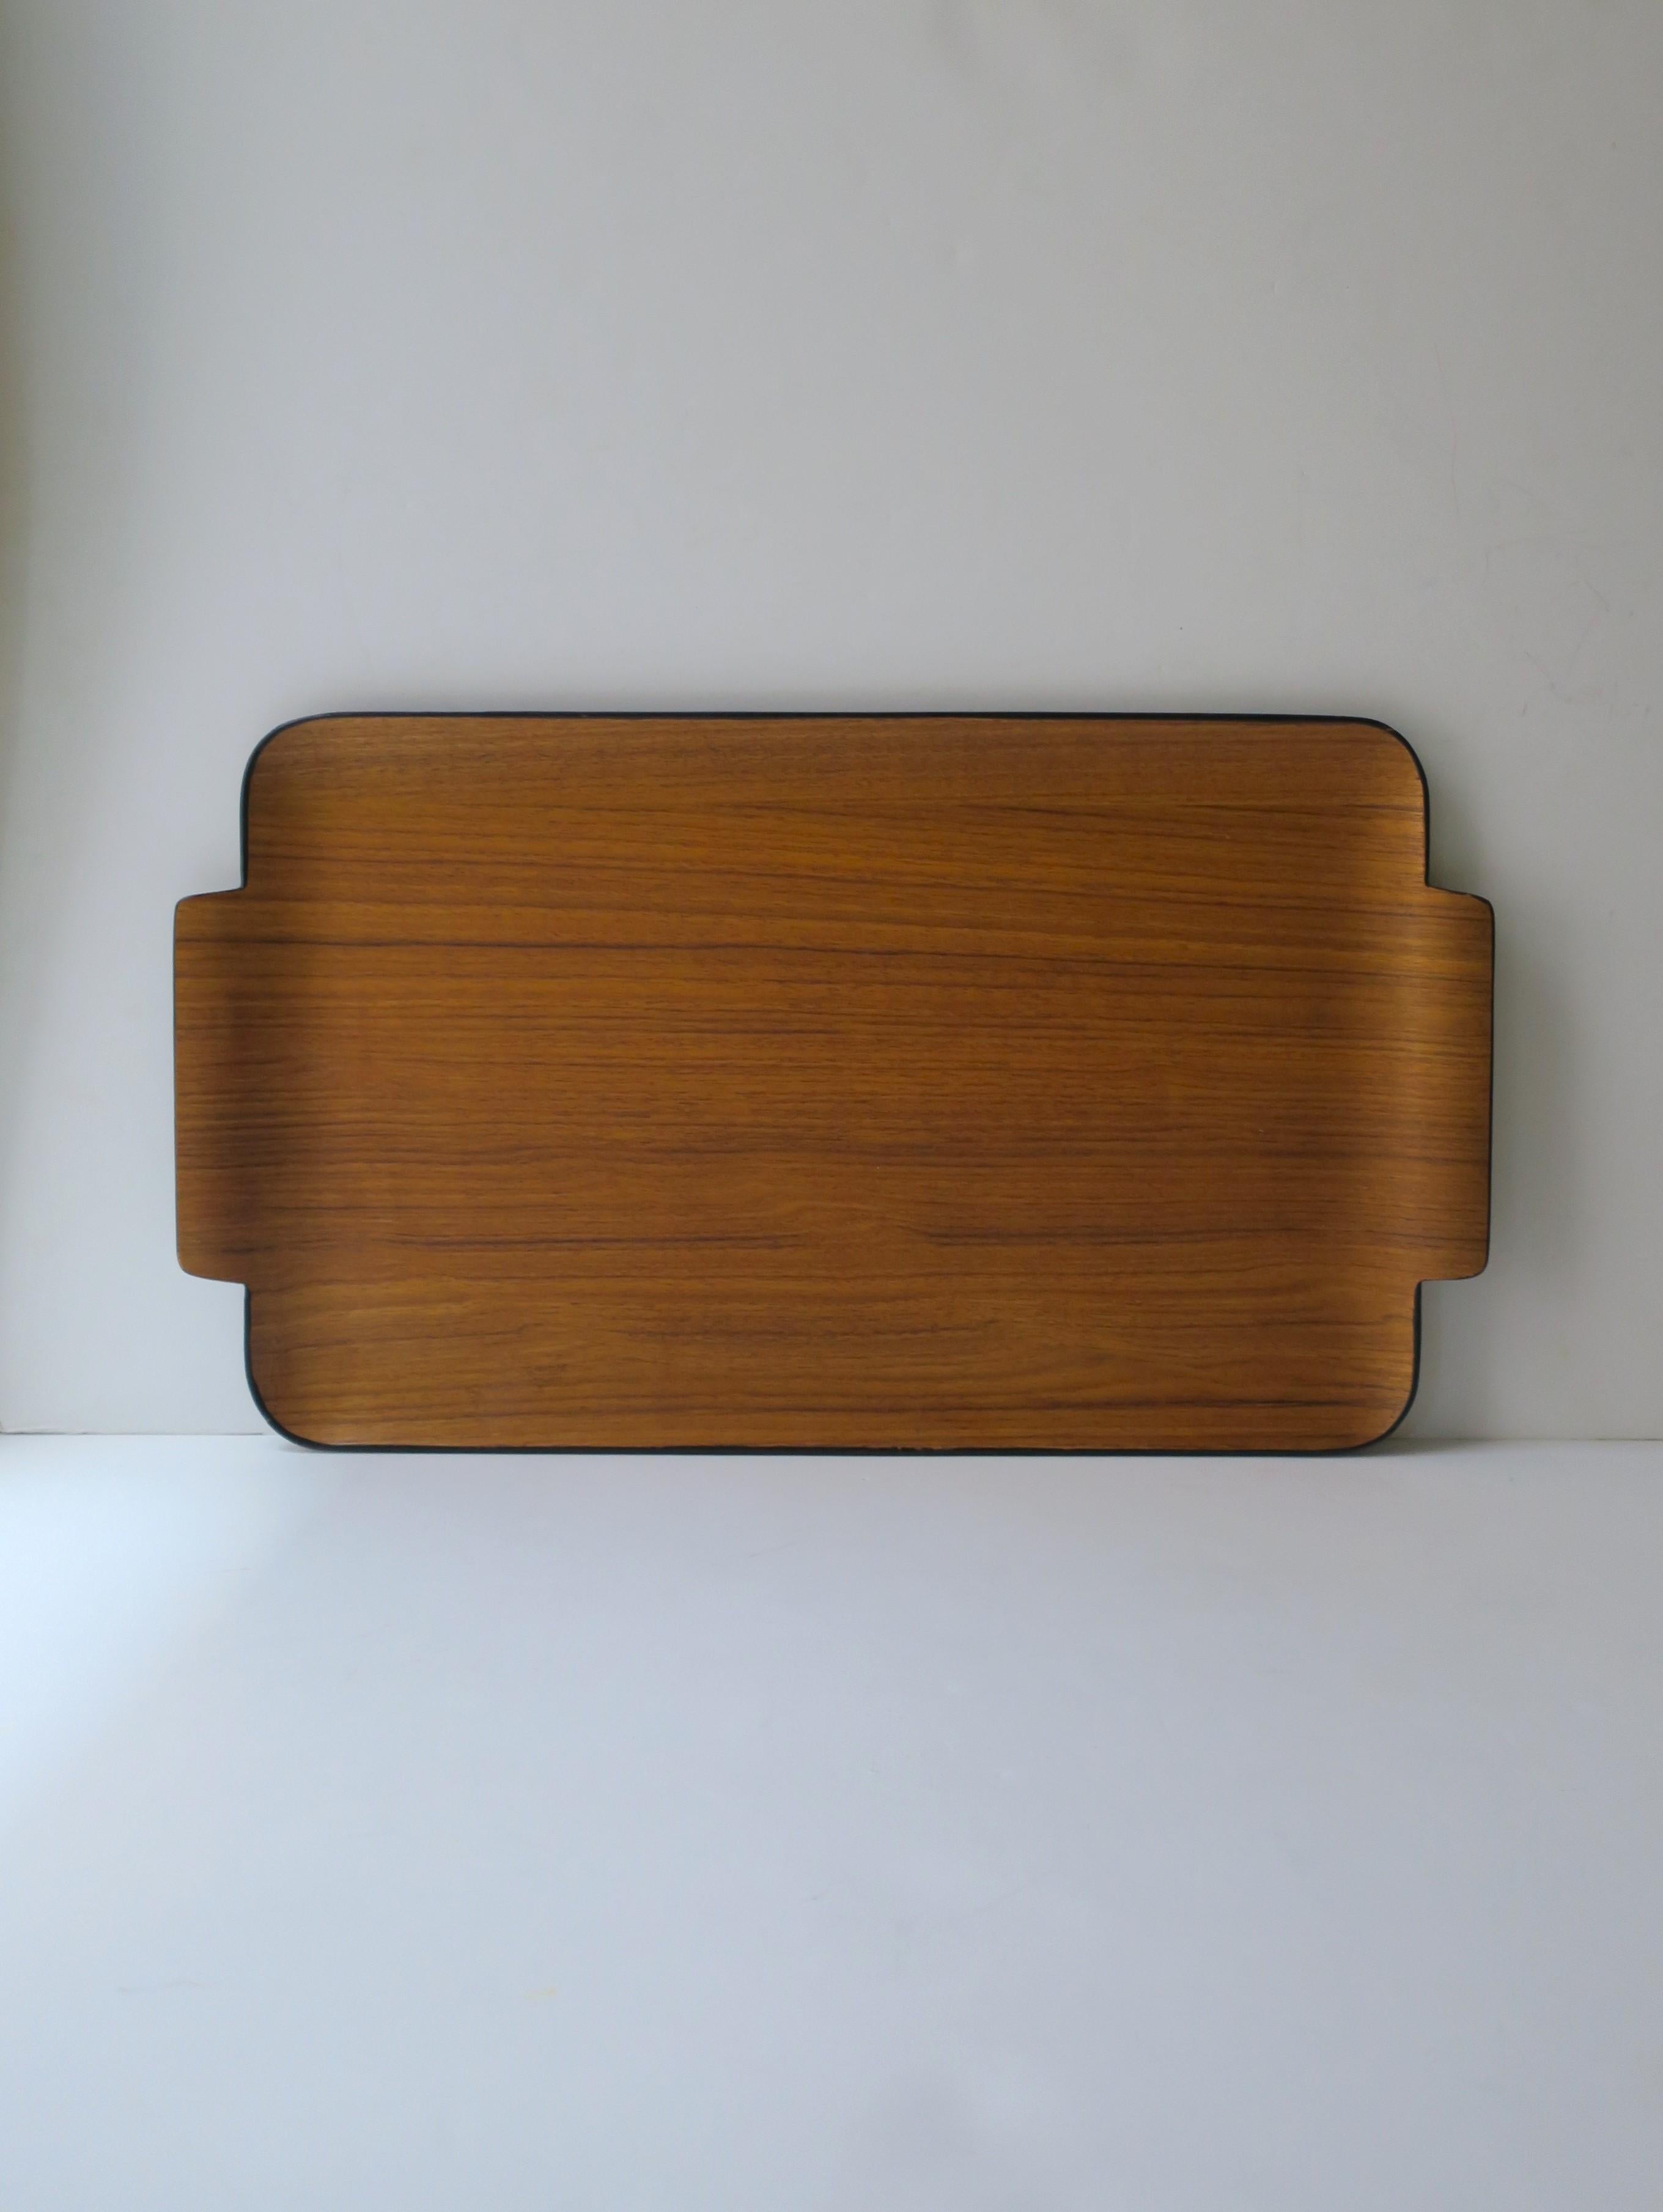 Japanese Teak Wood Tray Modern Minimalist For Sale 2